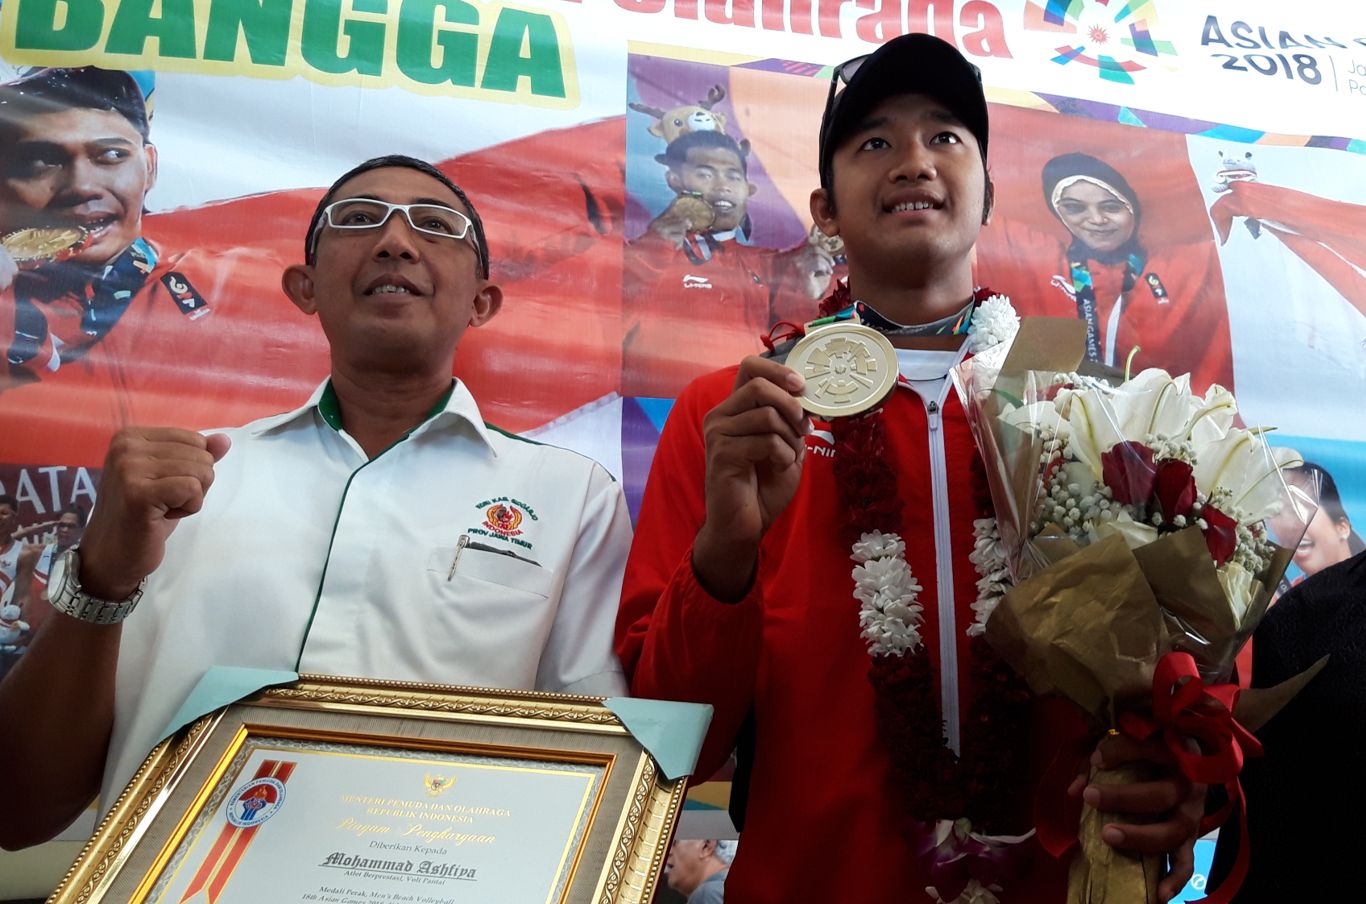 Mohammad Ashfiya atlet Voli Pantai yang meraih medali perak di Asian Games 2018. (foto: Haris/ngopibareng)